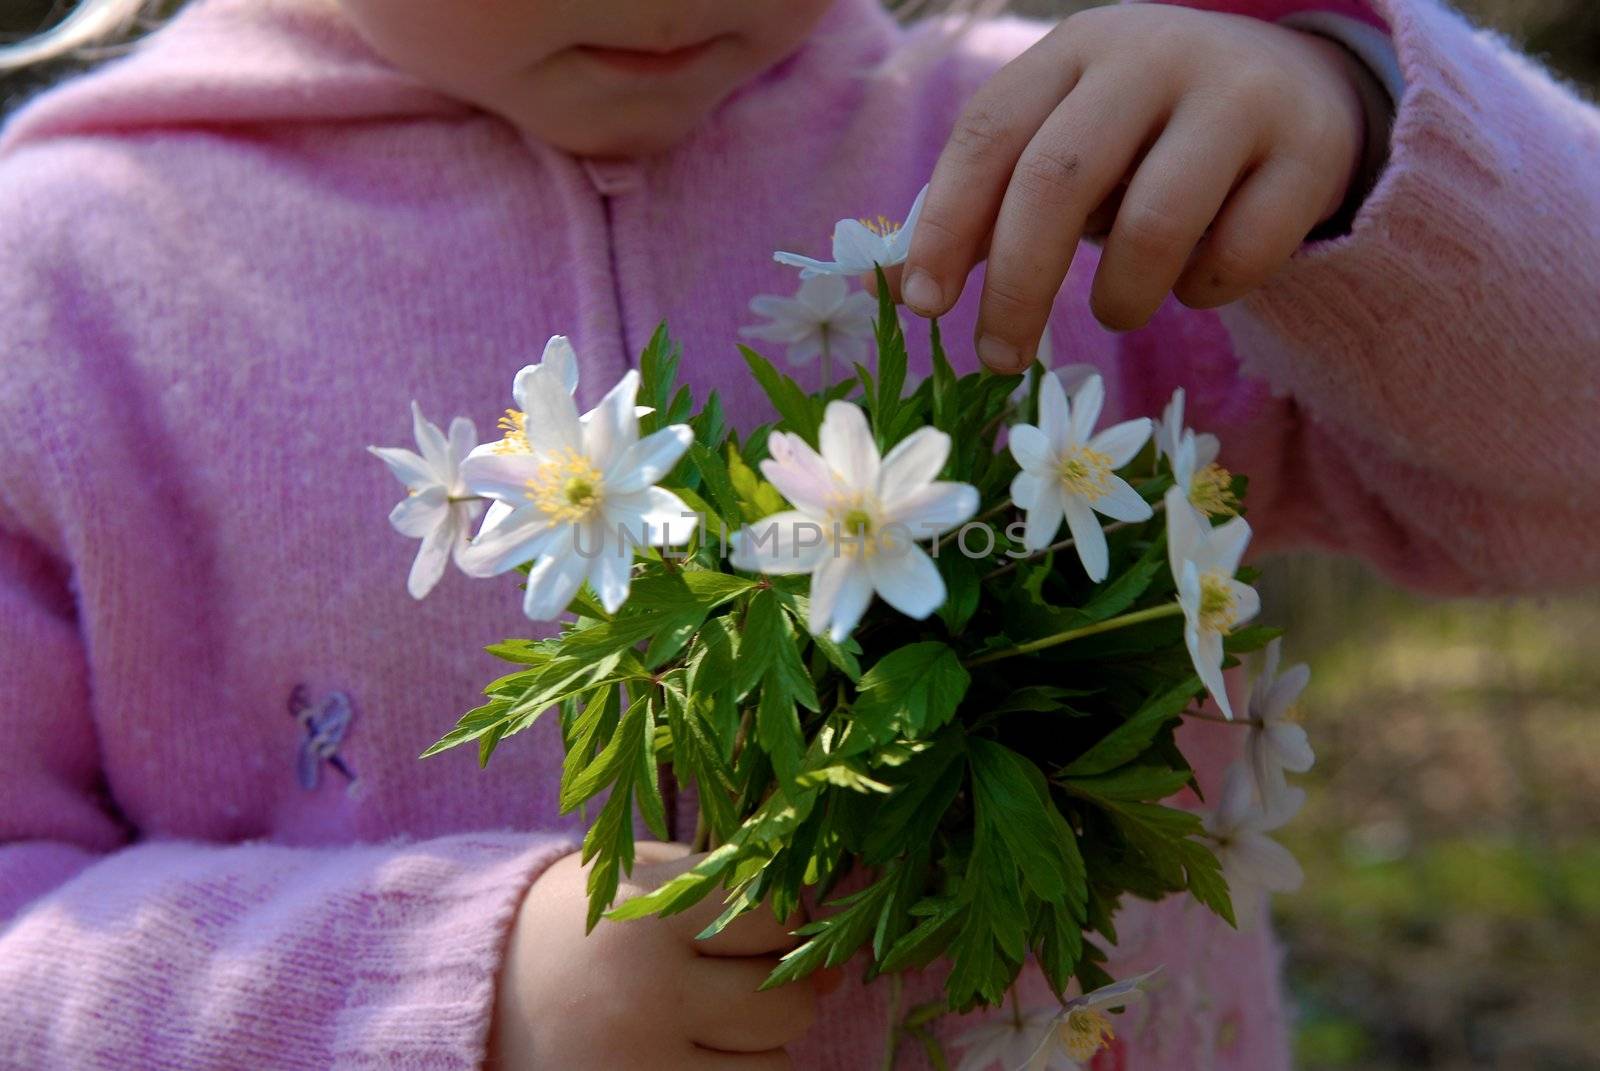 Cute girl with flower oudoors by Bildehagen